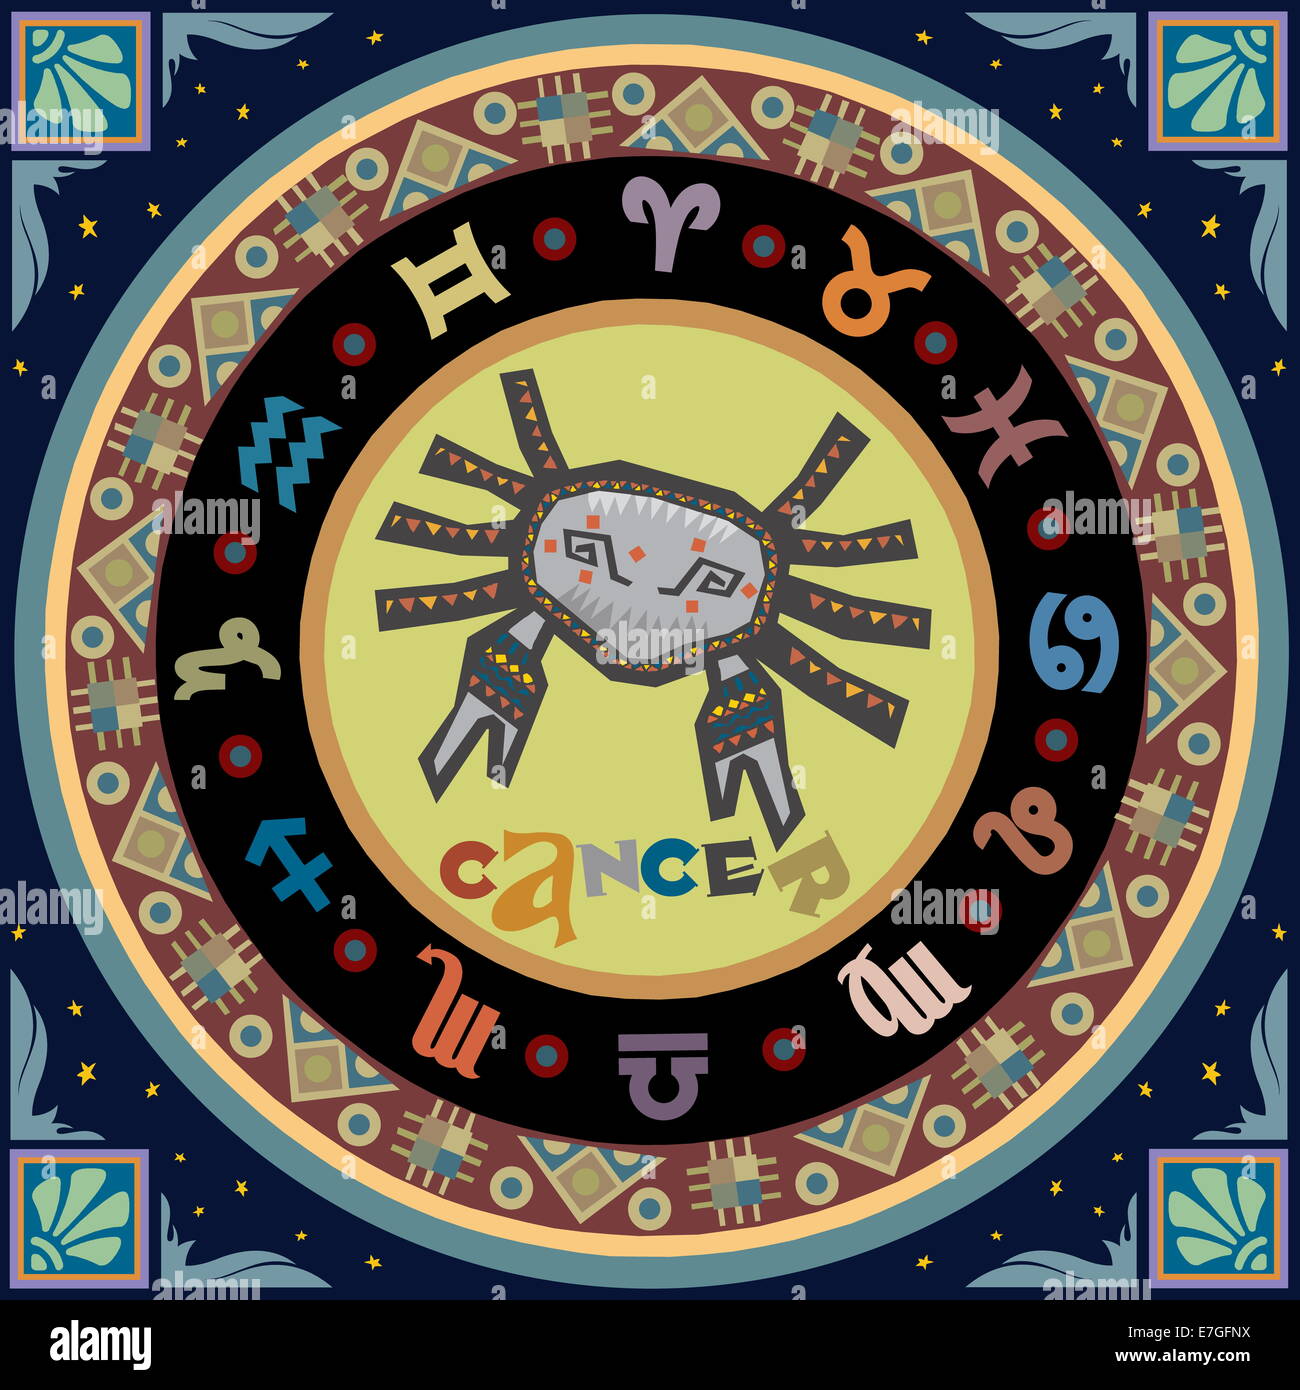 Horoscope zodiaque illustration. Veuillez trouver un autre signe de la même série. Banque D'Images